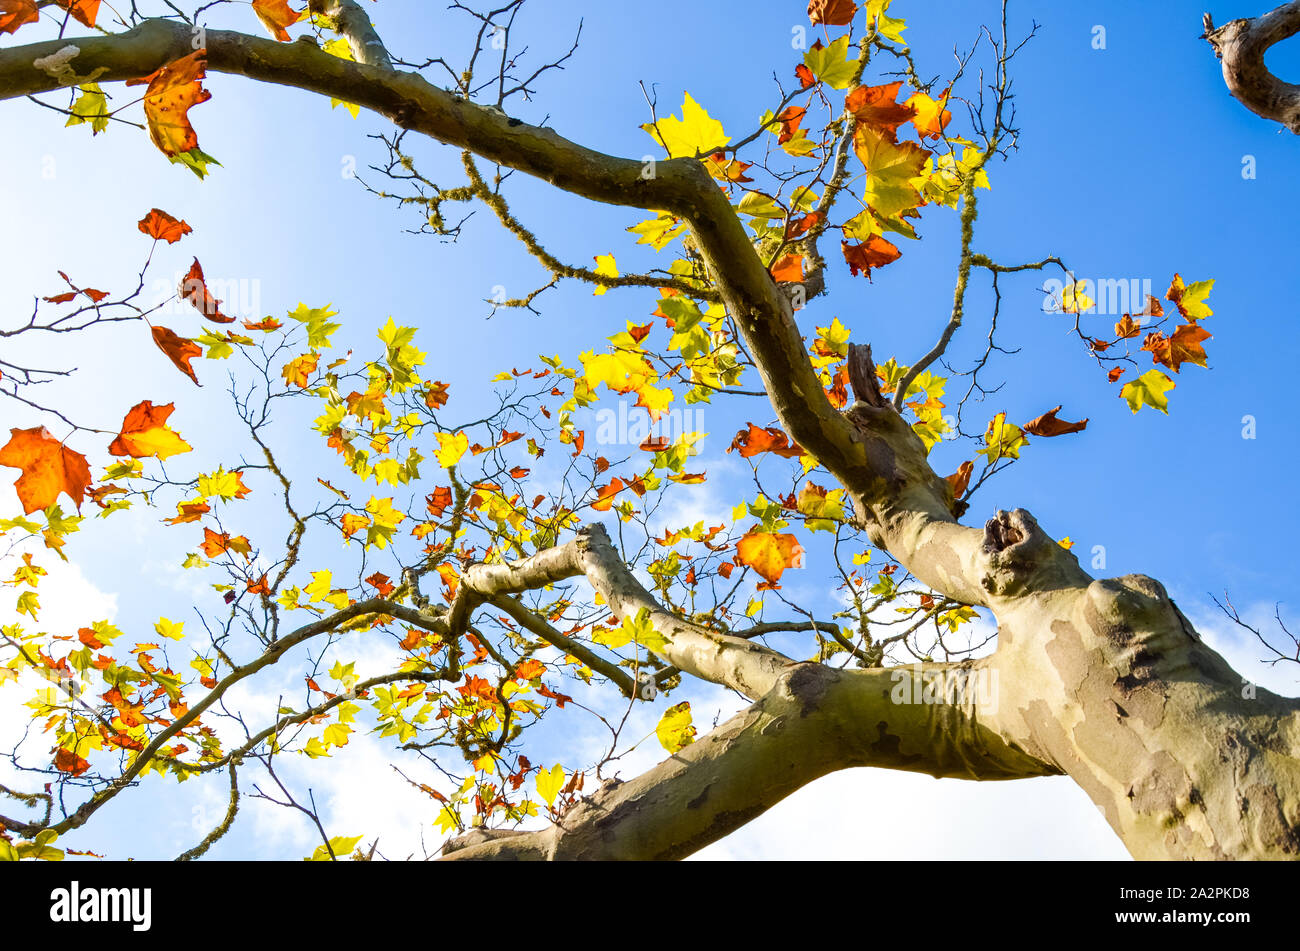 Low angle view of maple tree branches avec des feuilles automne coloré. Concept d'automne, feuillage coloré. Ciel bleu en arrière-plan. Journée ensoleillée au cours de l'été indien. La saison de l'année. Banque D'Images